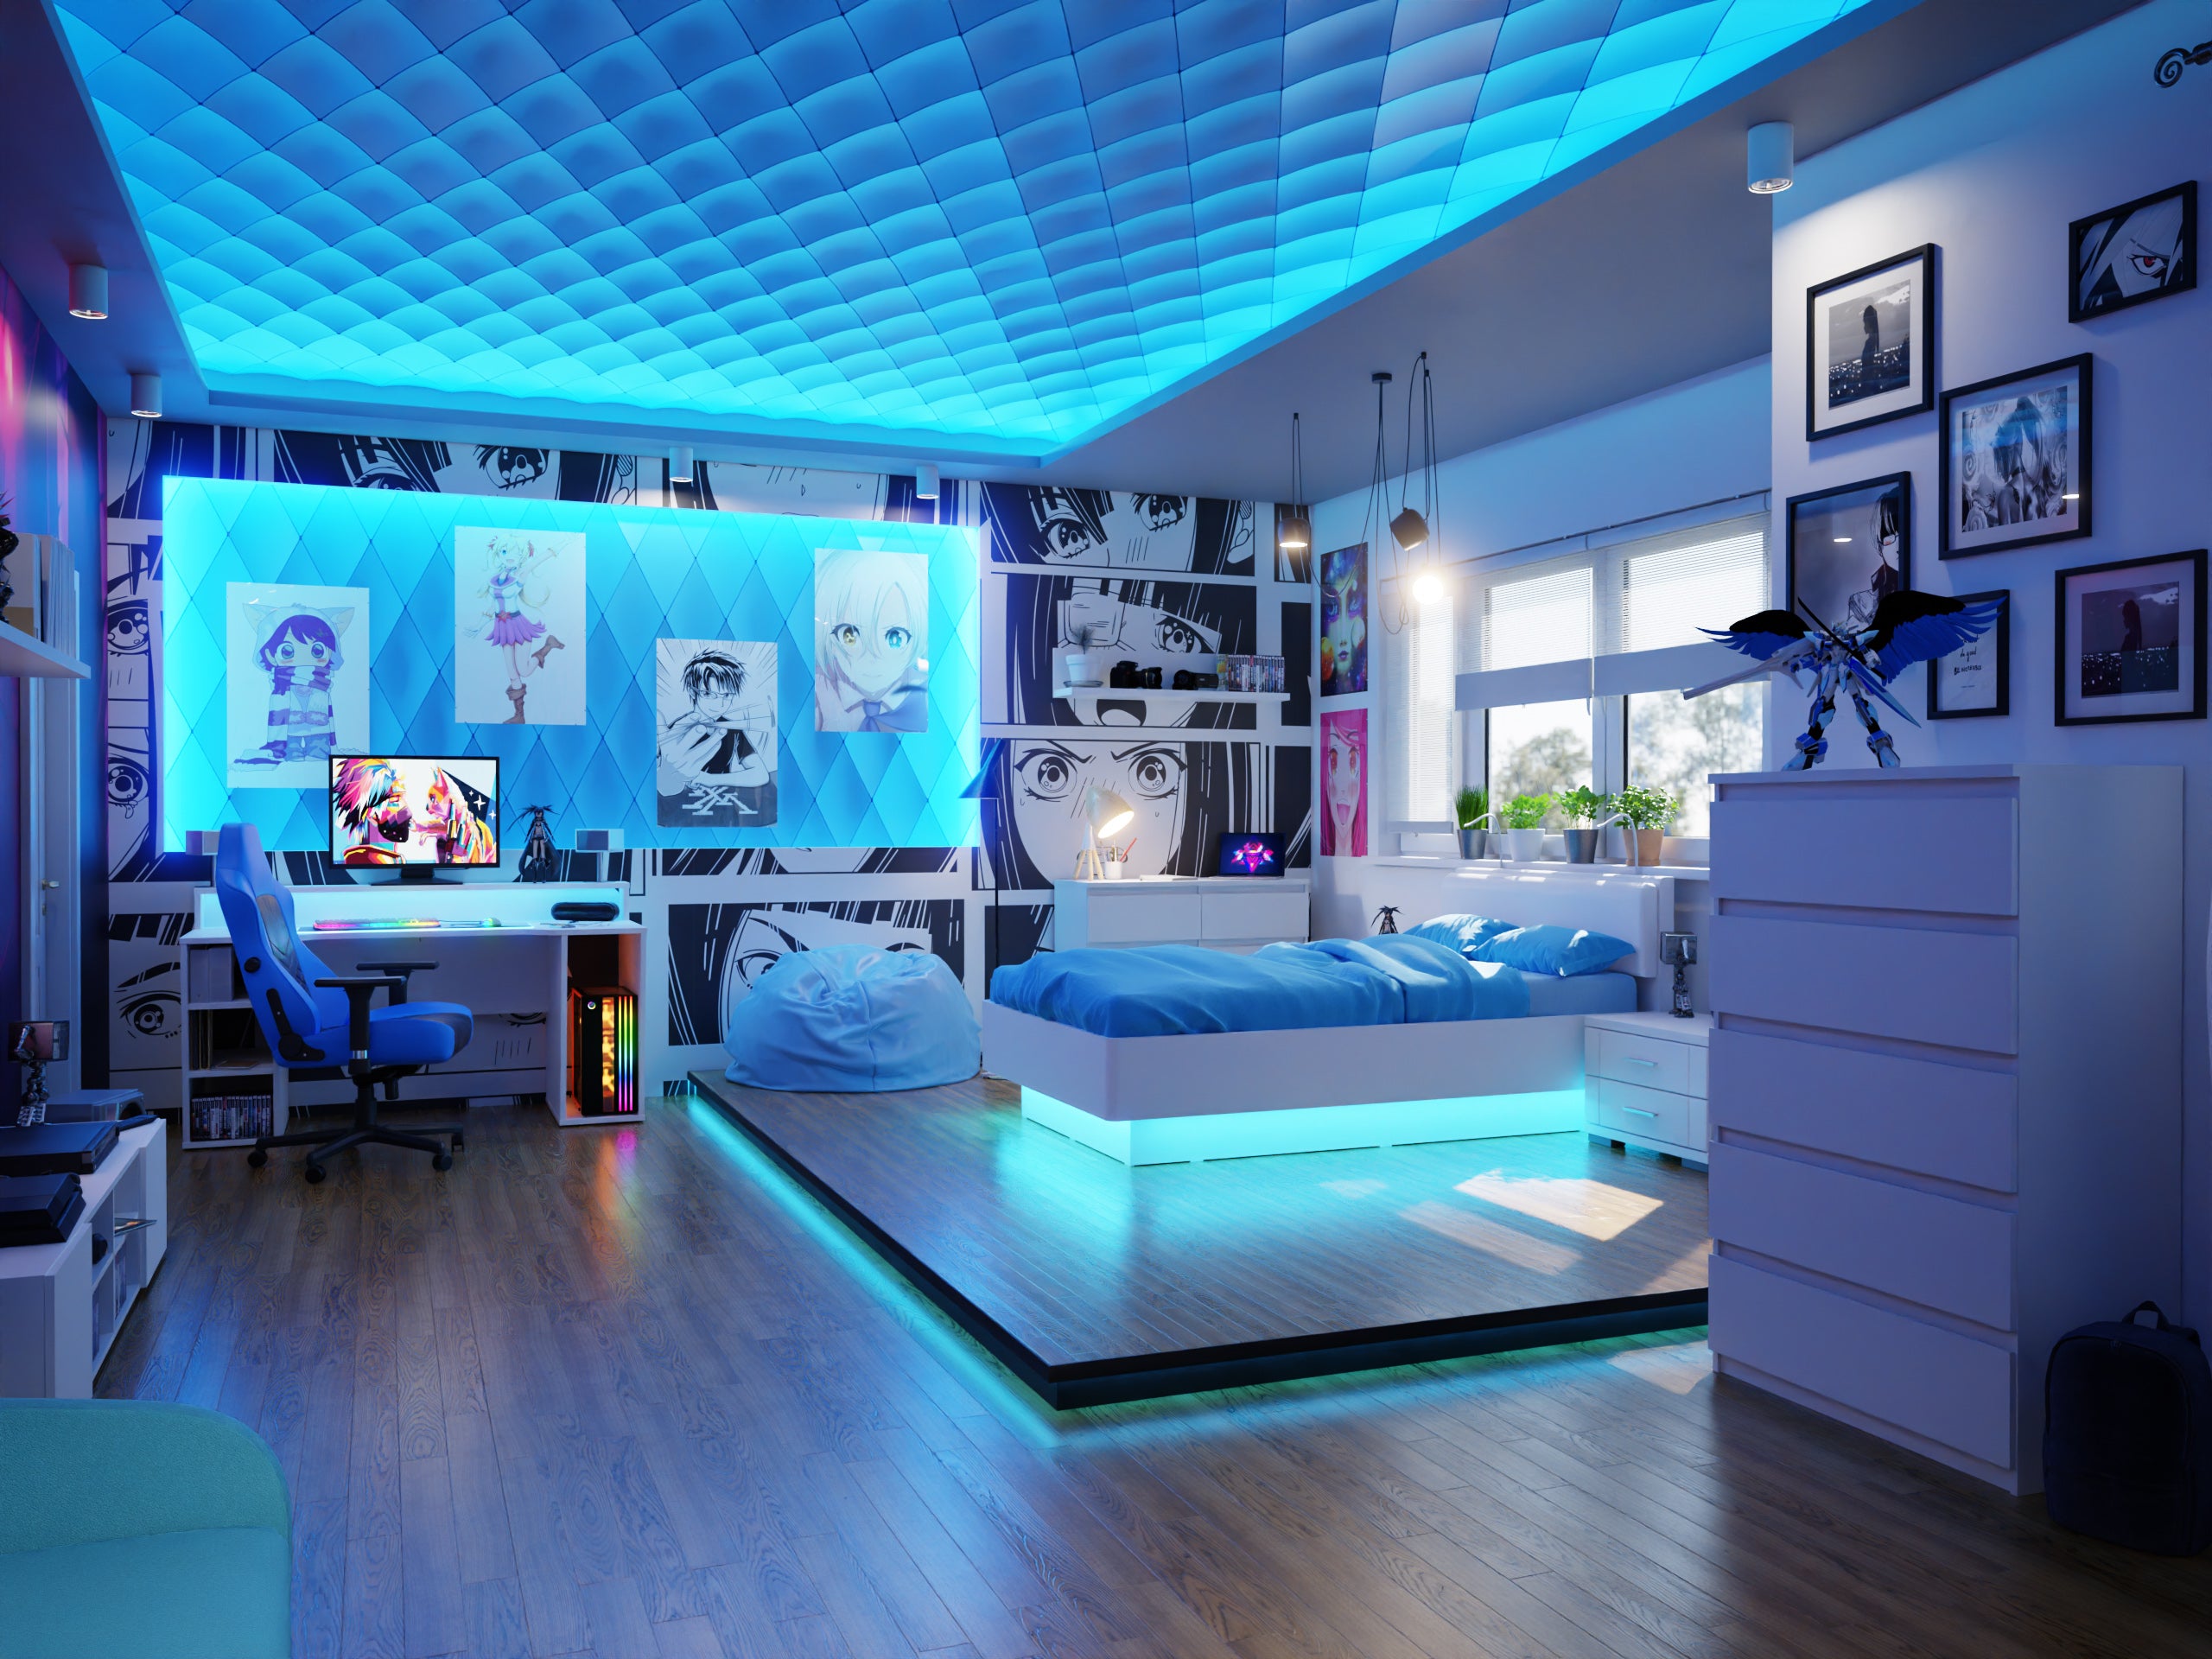 Pokój w stylu anime - jak urządzić? Białe biurko gamingowe w pokoju gamingowyem, biała szafka rtv, niebieskie oświetlenie LED, białe łóżko, biała komoda